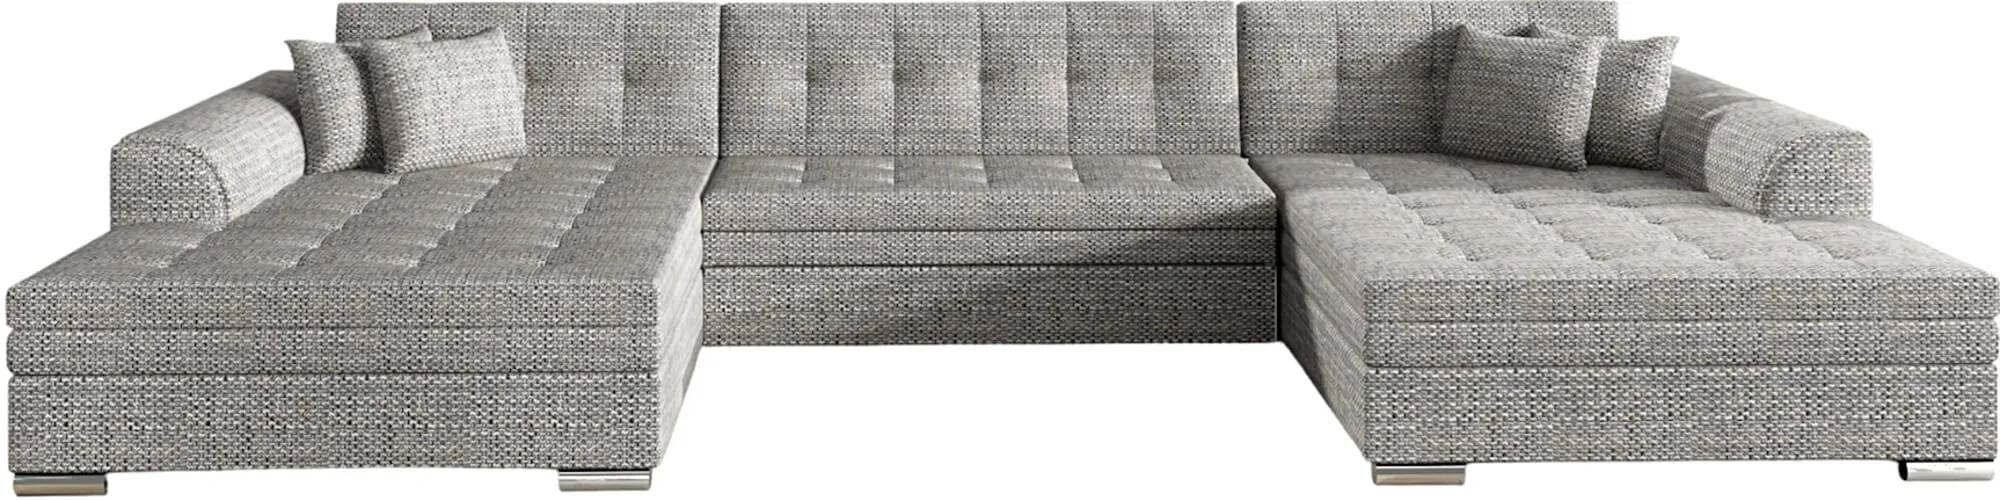 Canapé d'angle convertible en tissu chiné gris clair